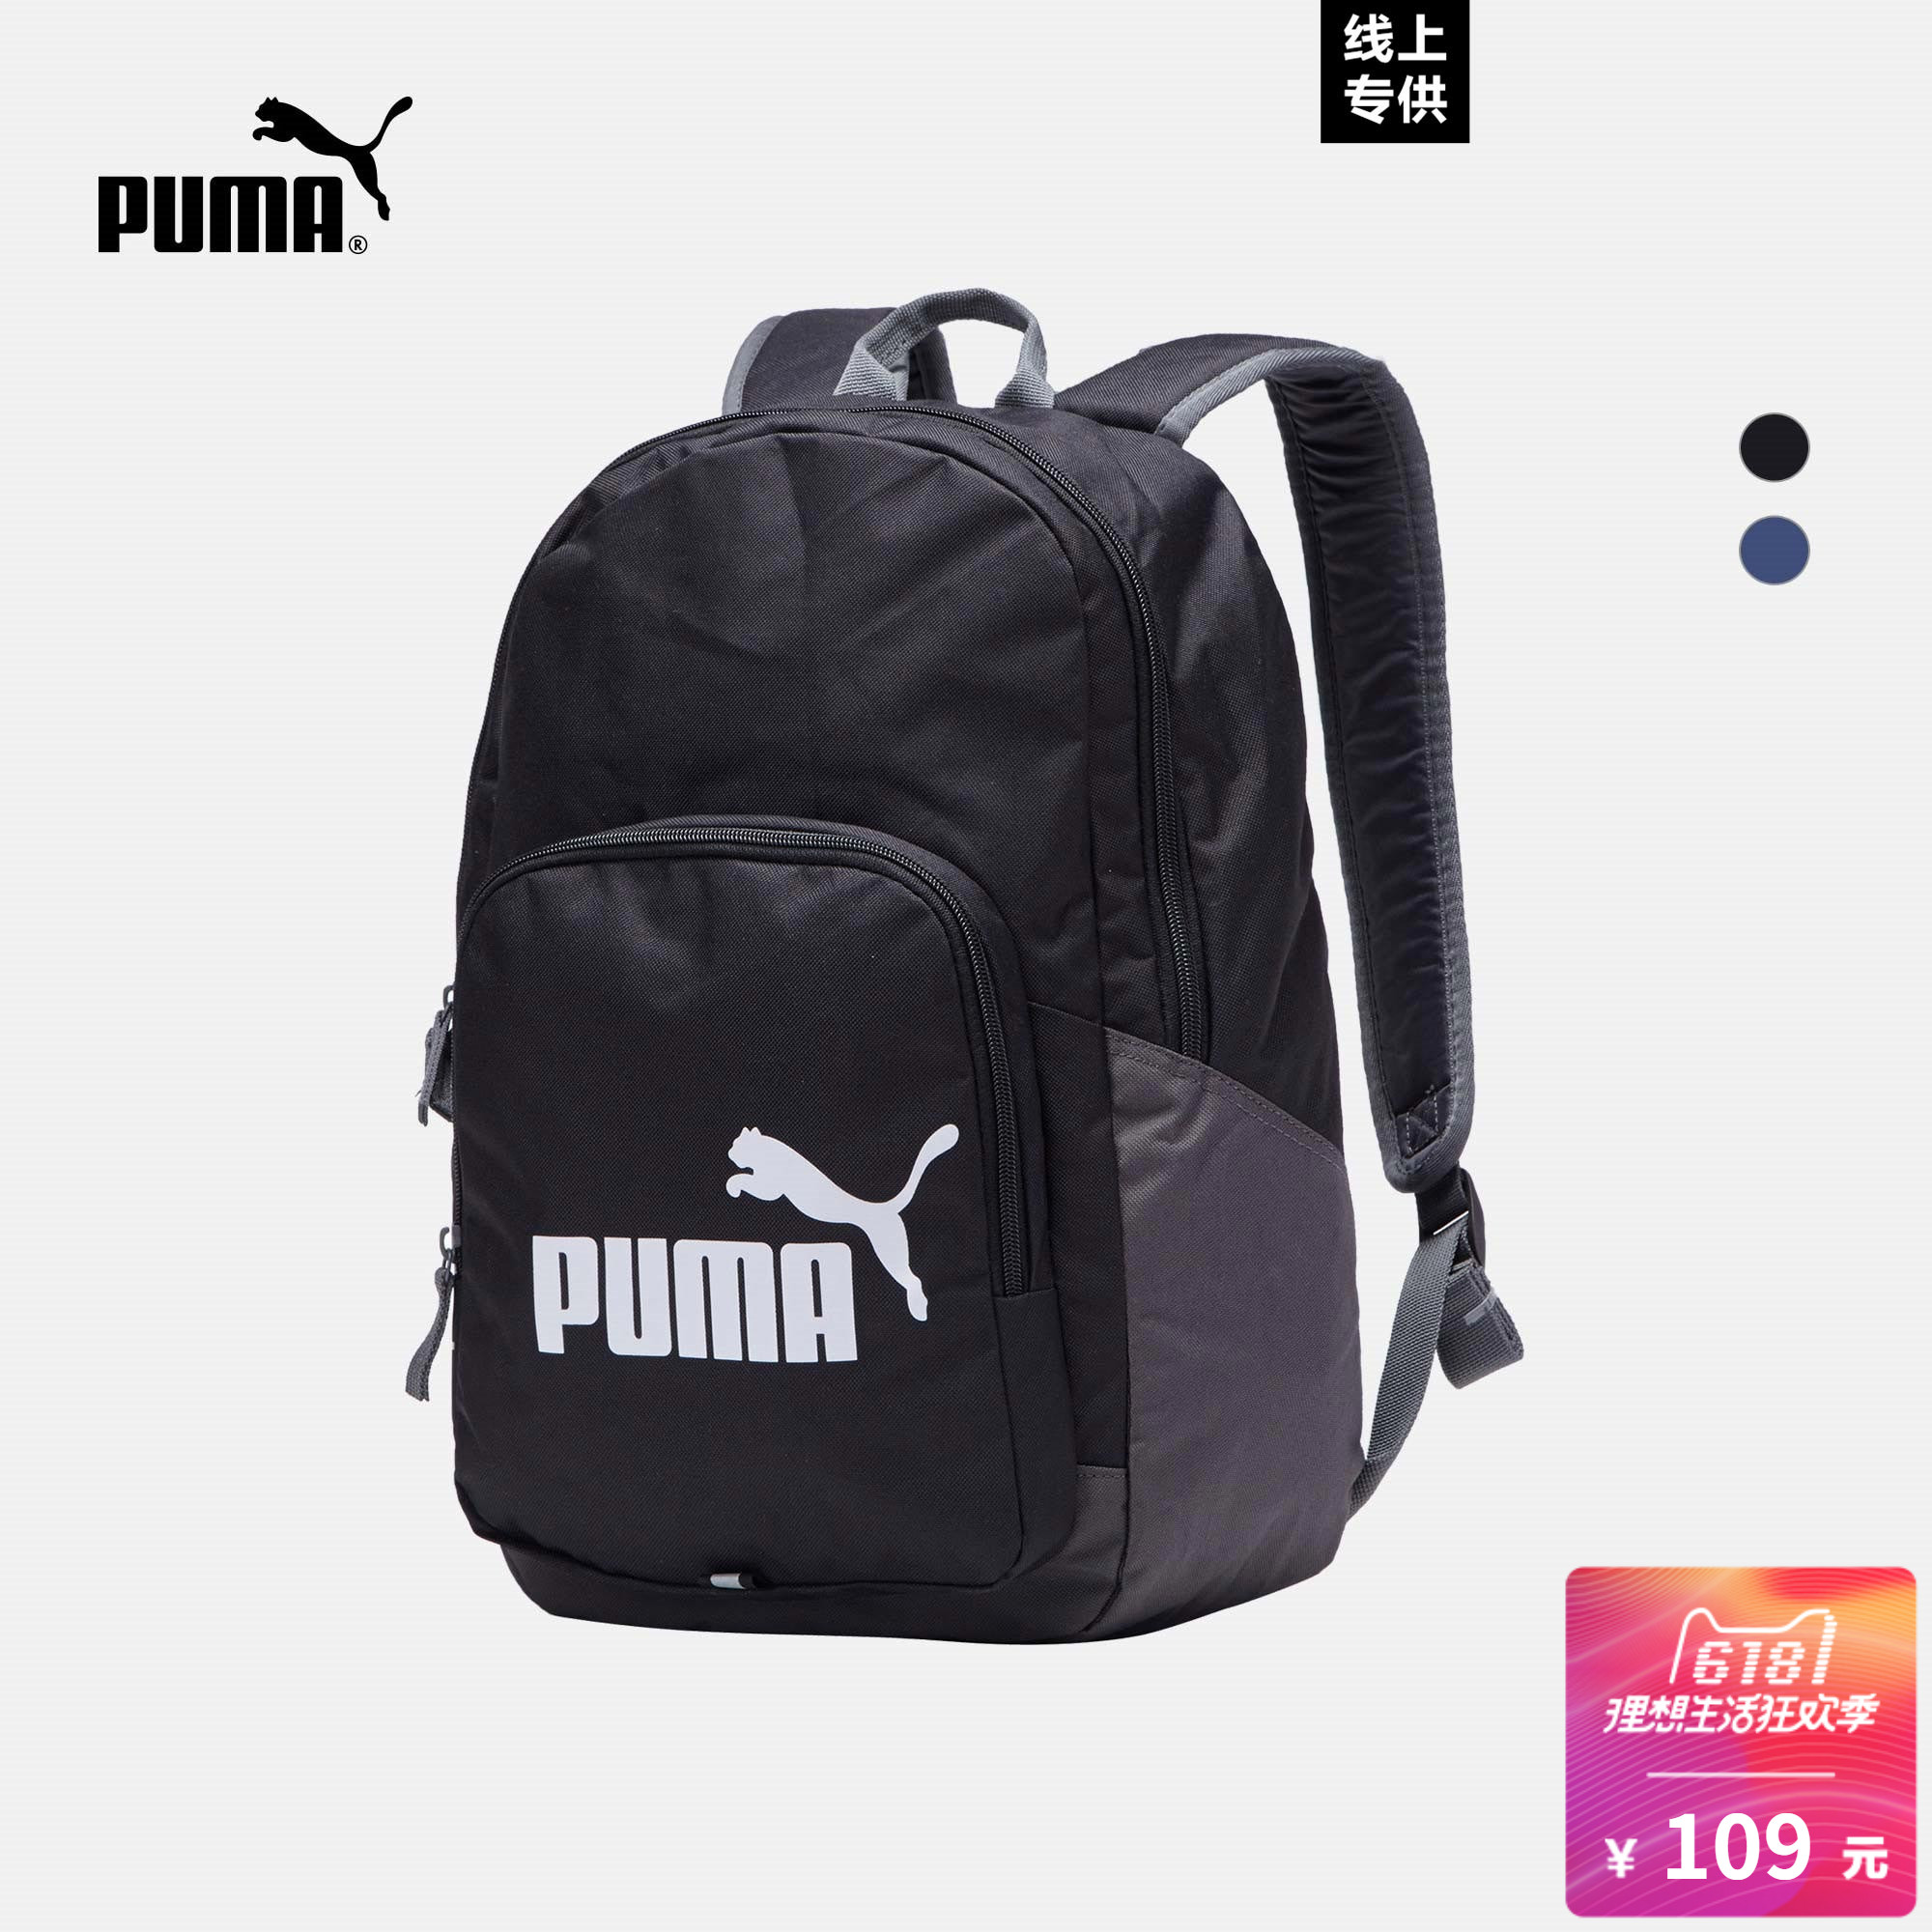 PUMA Puma official printed Logo shoulder bag Phase 073589